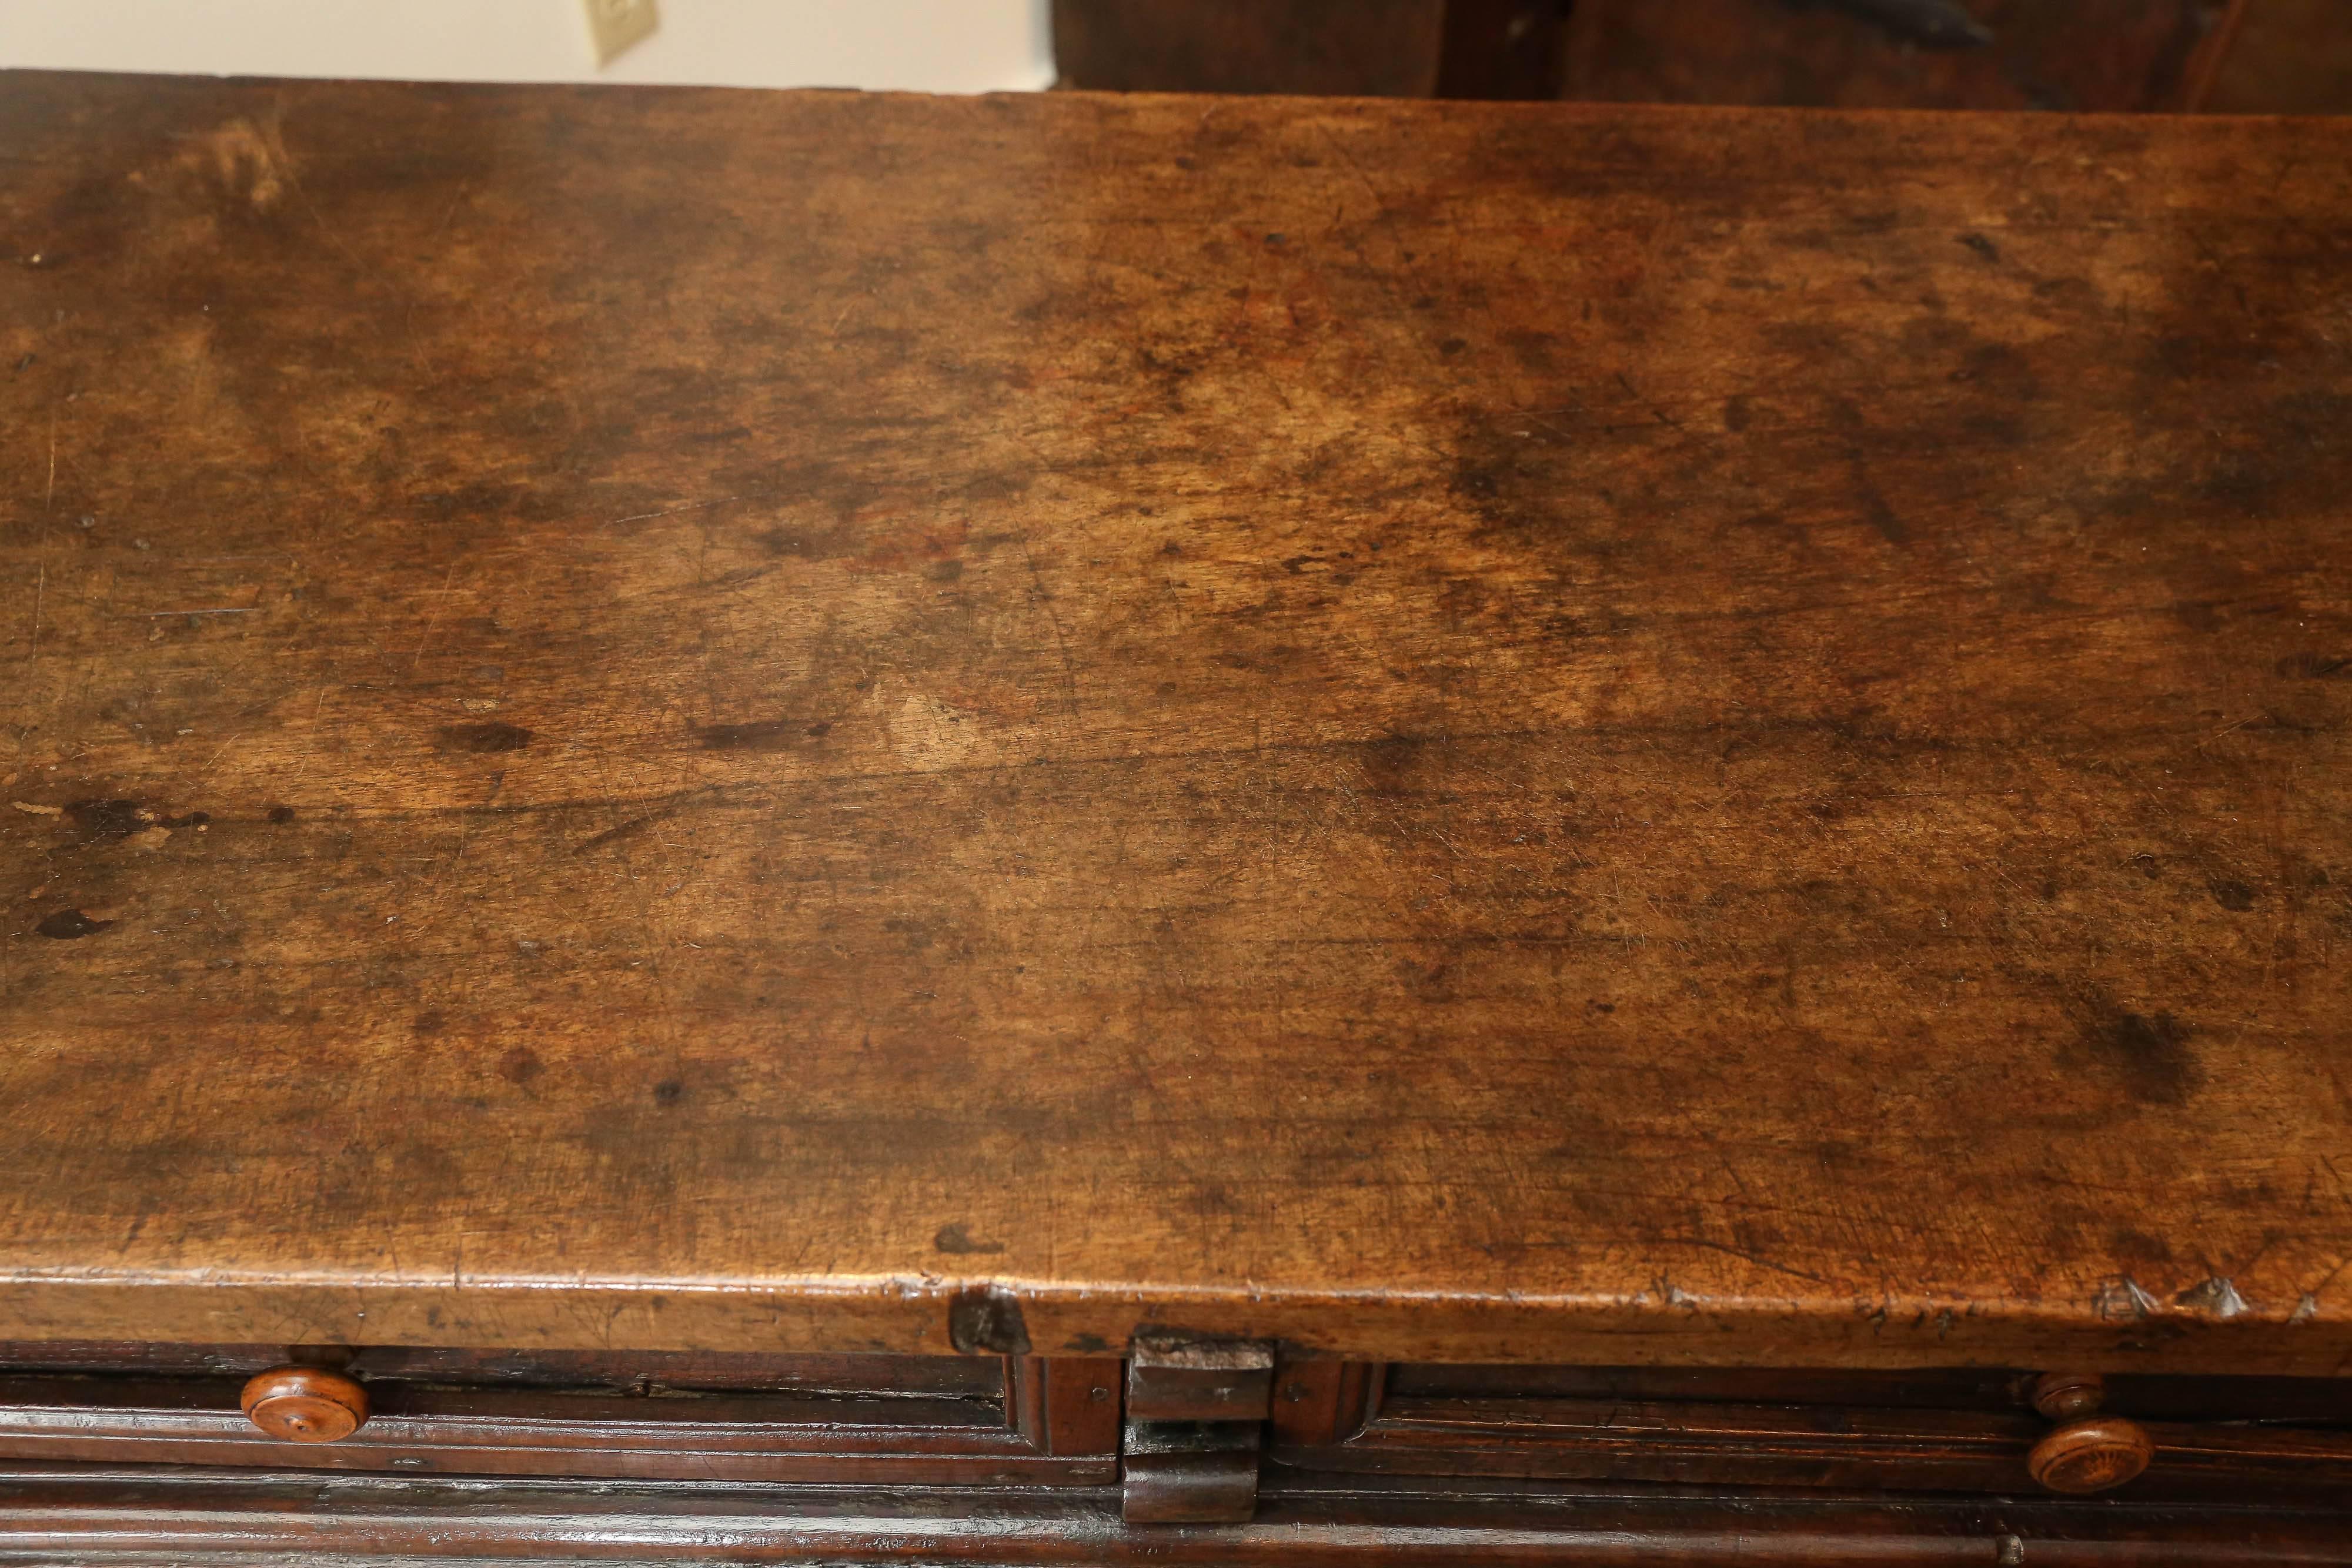 konsolentisch aus spanischem Nussbaumholz des 17. Jahrhunderts mit zwei Schubladen, gespreizten Beinen und eiserner Bahre. Die Platte ist aus einem einzigen Stück Nussbaumholz gefertigt.